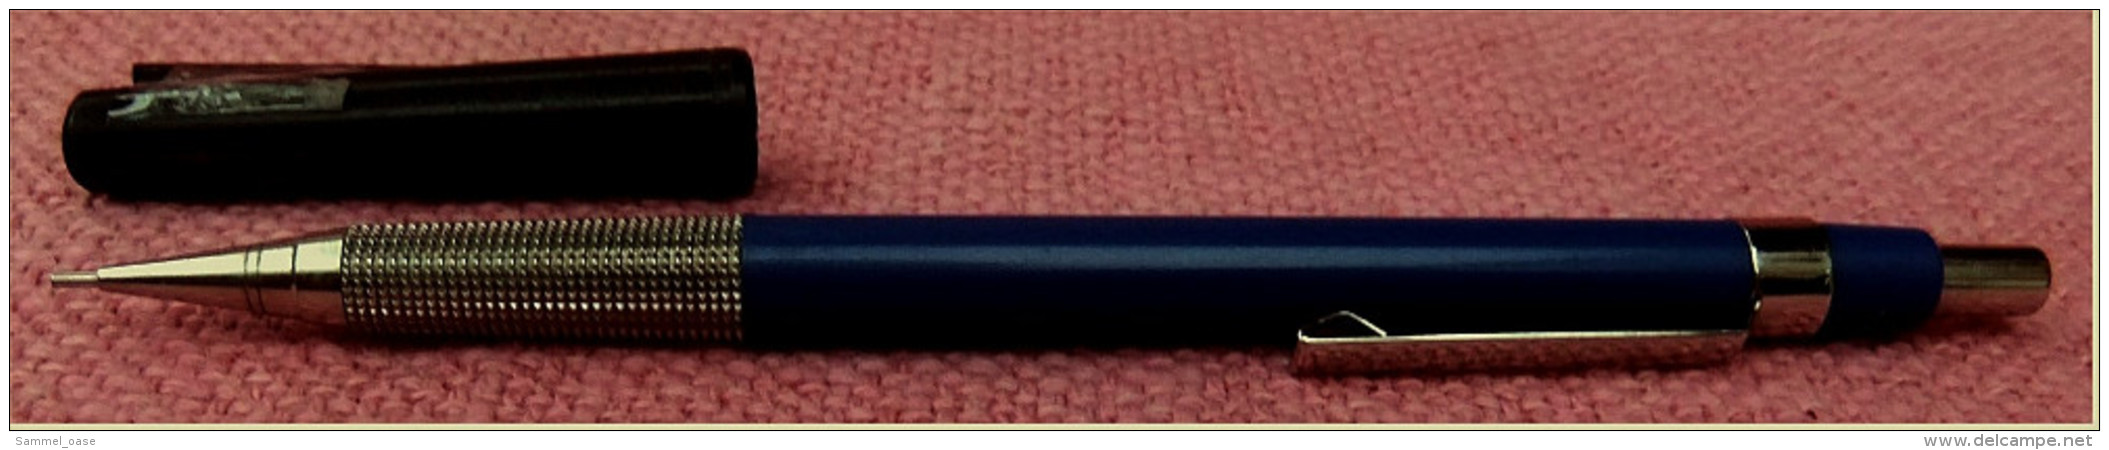 Seltener Staedtler Micrograph F 77017 Bleistift / Druckbleistift - Mechanical Pencil 0,7 Mm - Blau - Schreibgerät